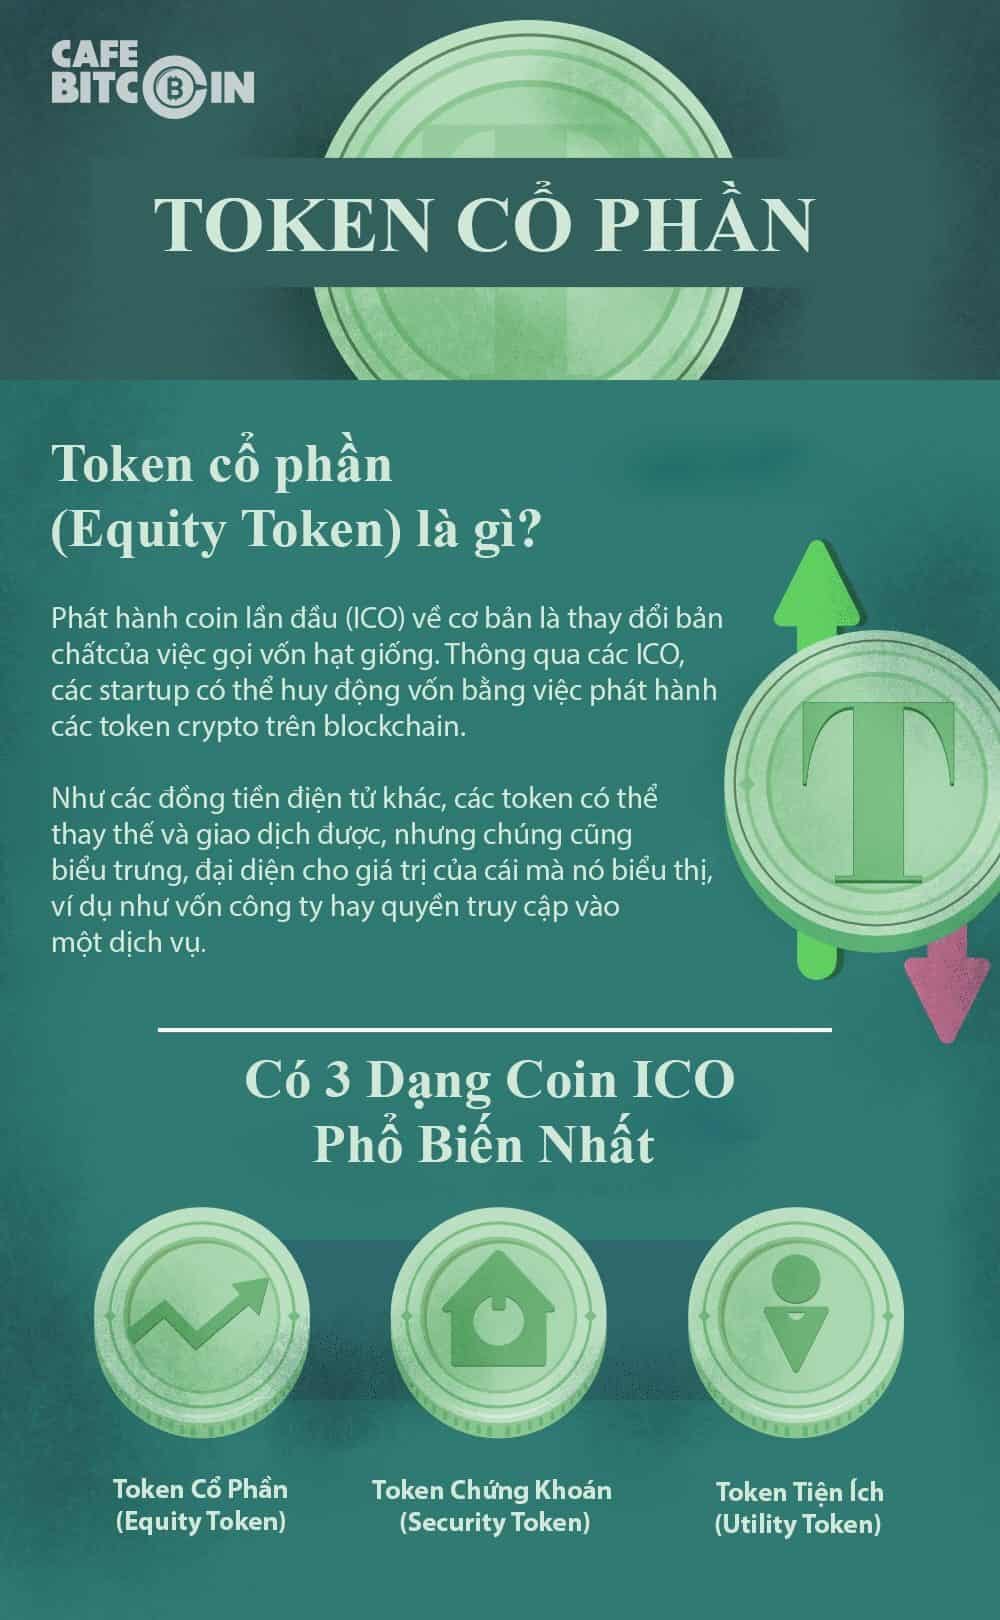 Equity Token là gì?